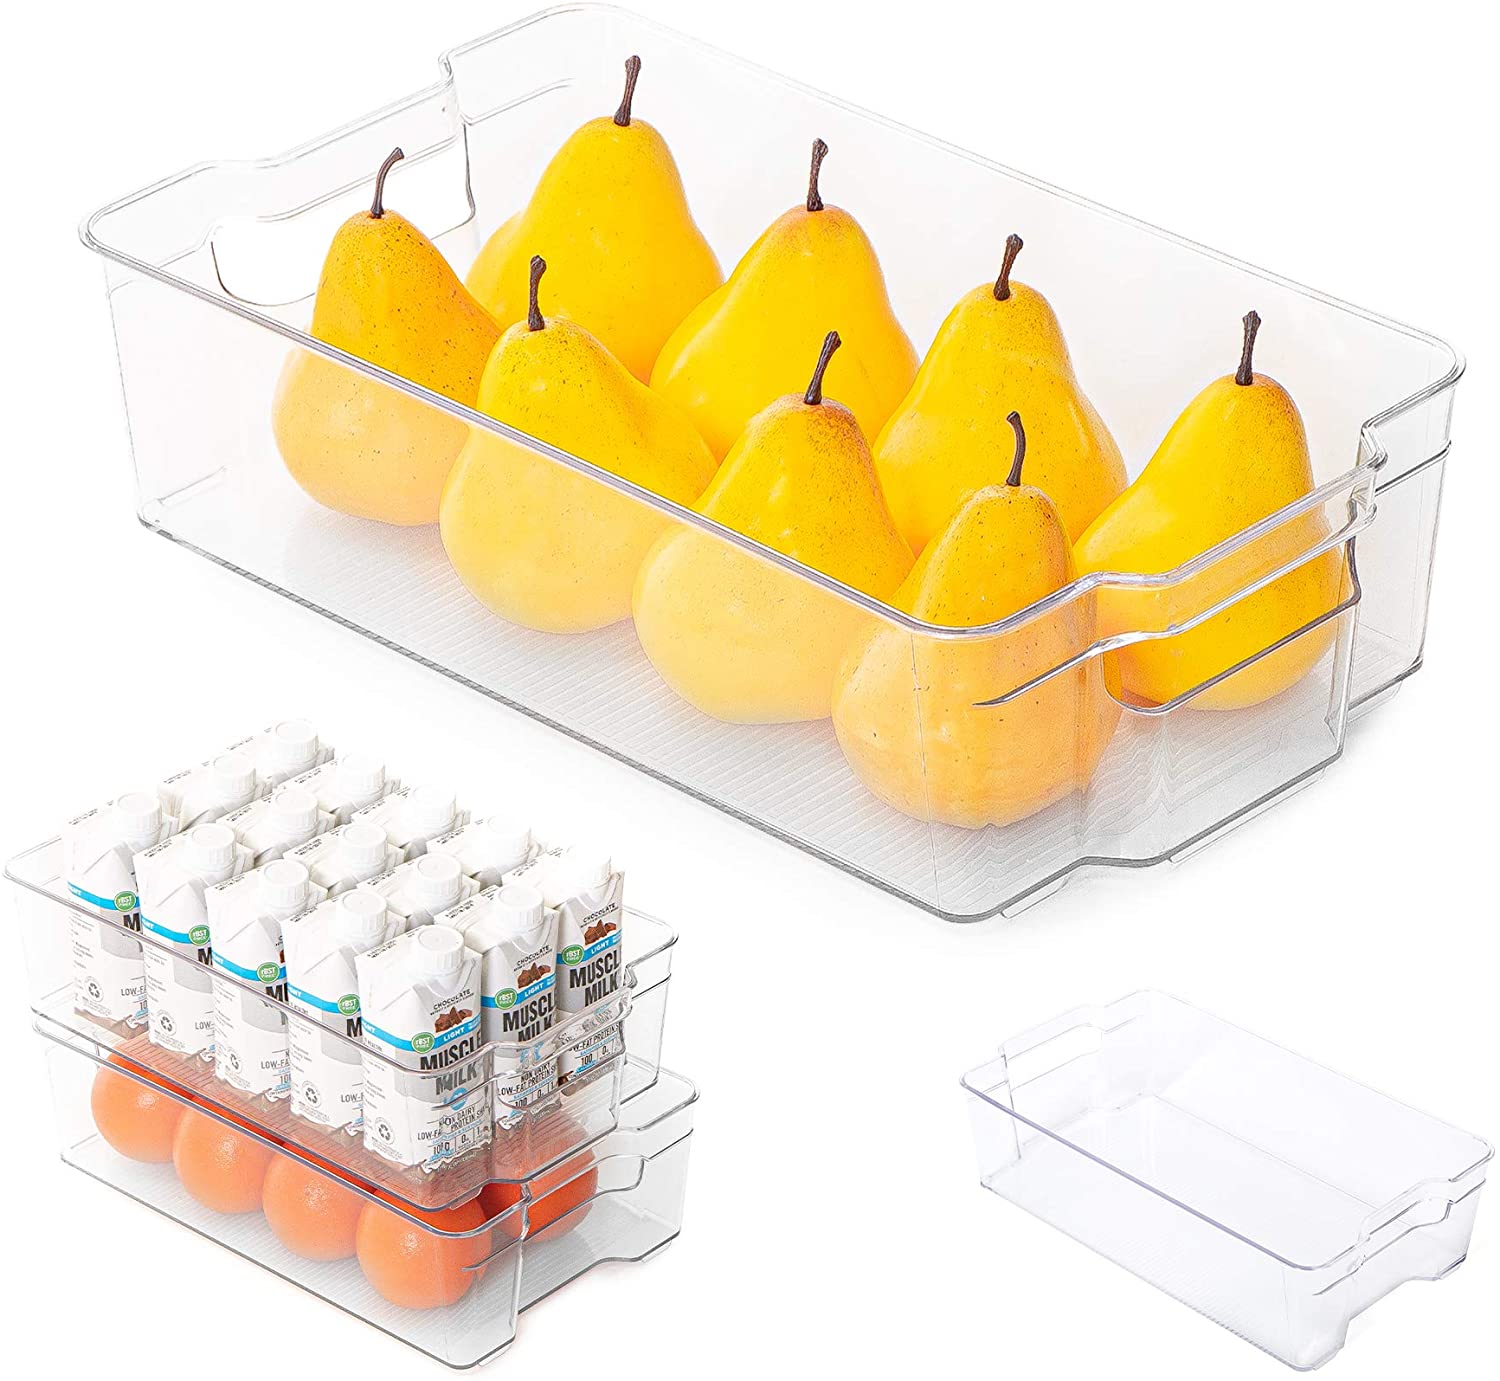 Kitchen Fruit Food Storage Box Refrigerator Organizer With Handle